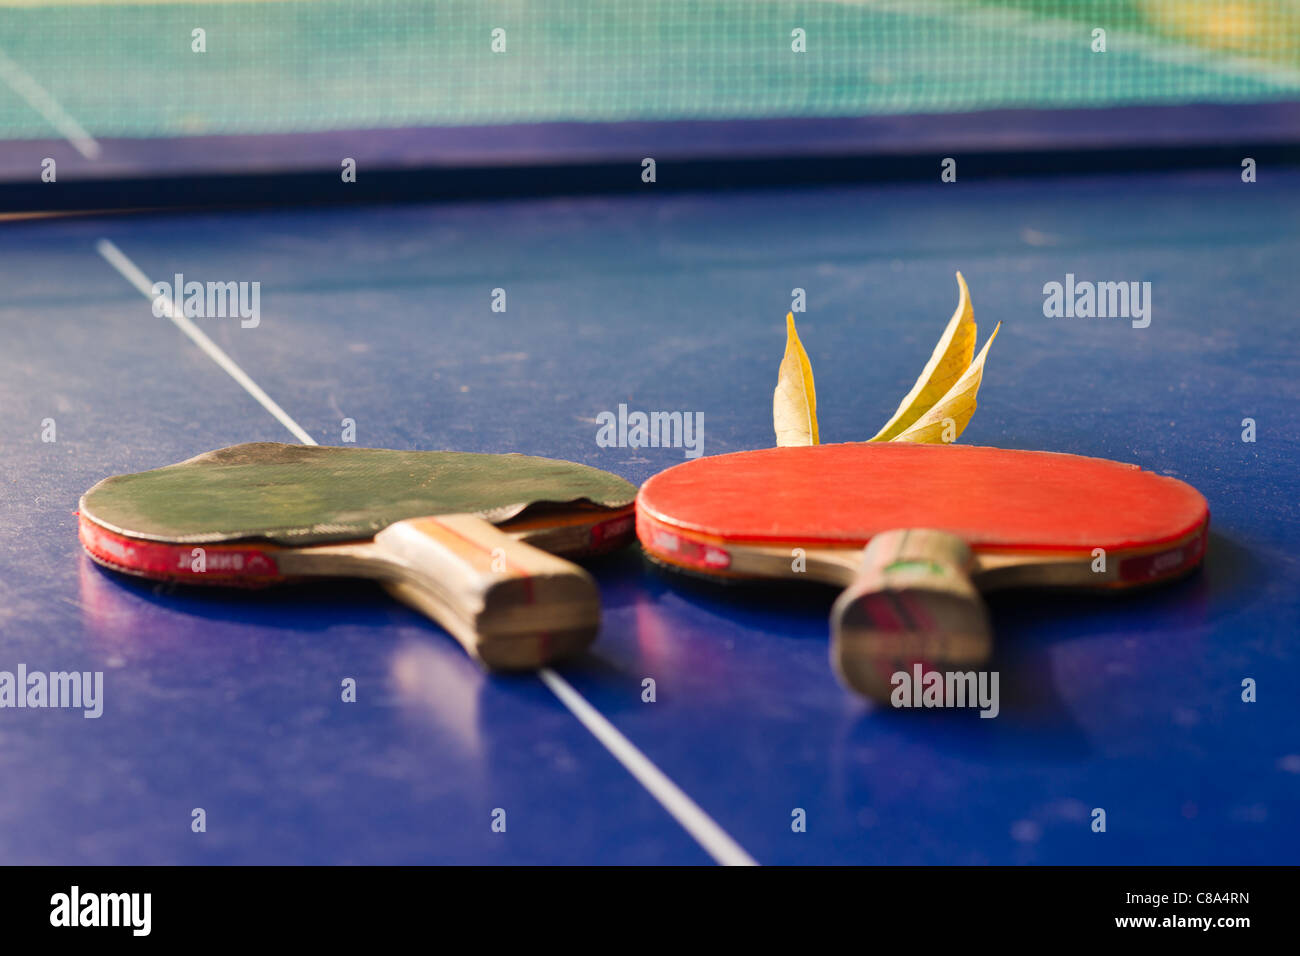 Acheter Couleur batte de tennis de table rouge / bleu / vert jaune